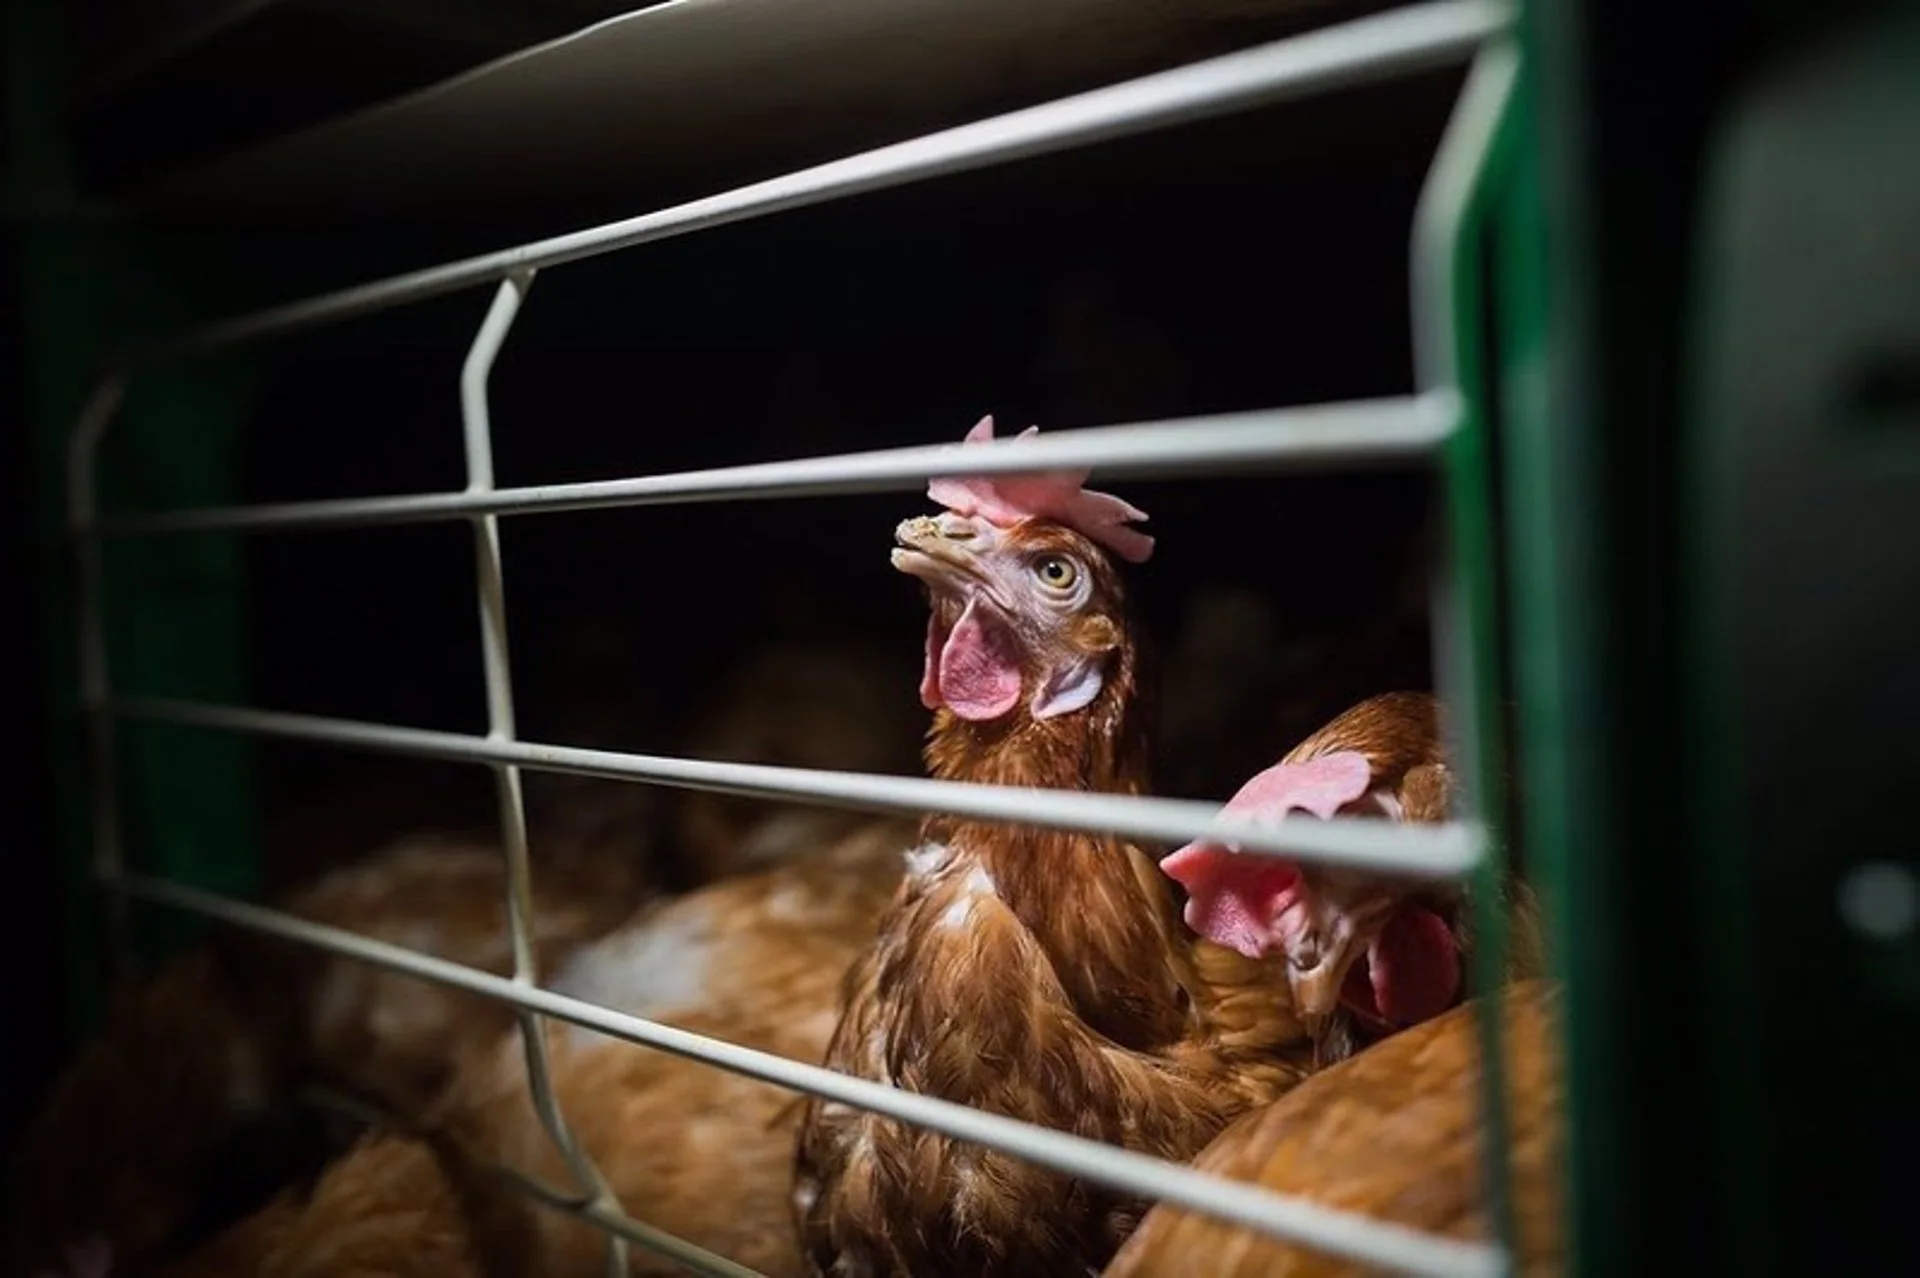 Investigación de Igualdad Animal en granja de gallinas realizada en España / Foto: Igualdad Animal